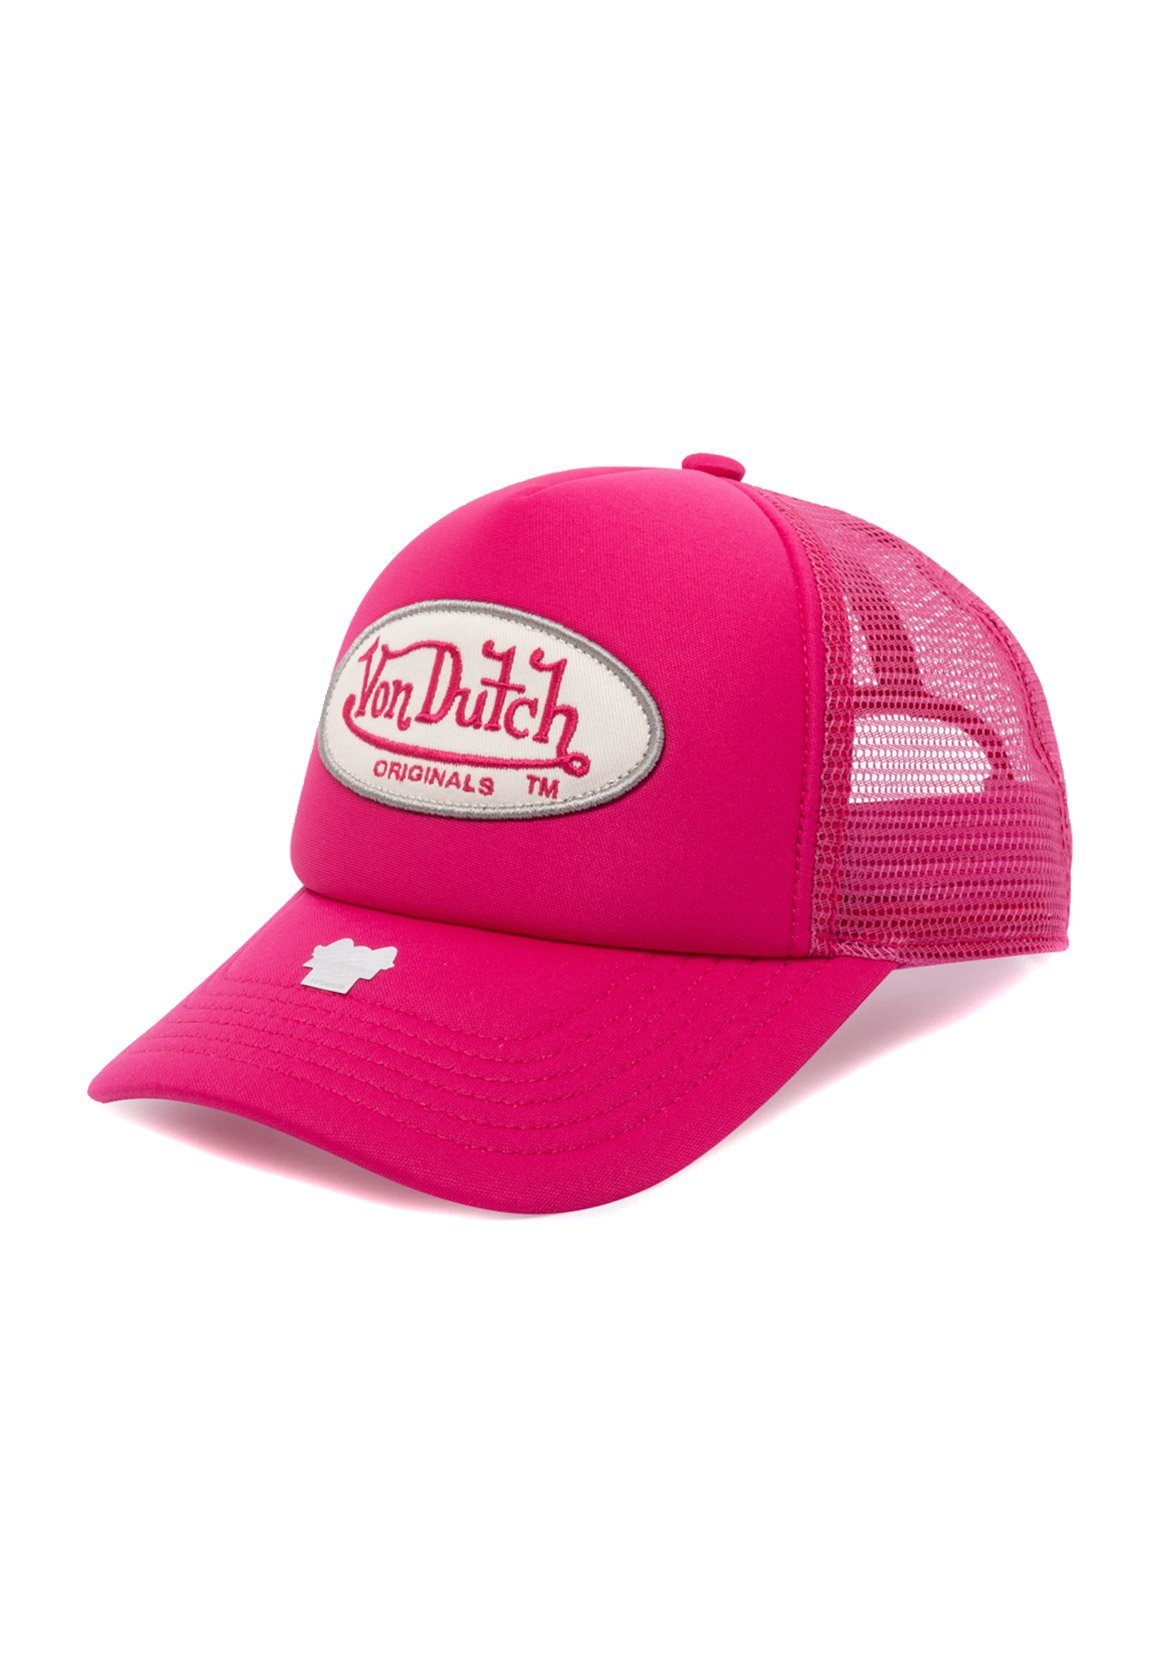 Von Dutch Trucker Cap Trucker Dutch Cap TAMPA Pink Pink Von